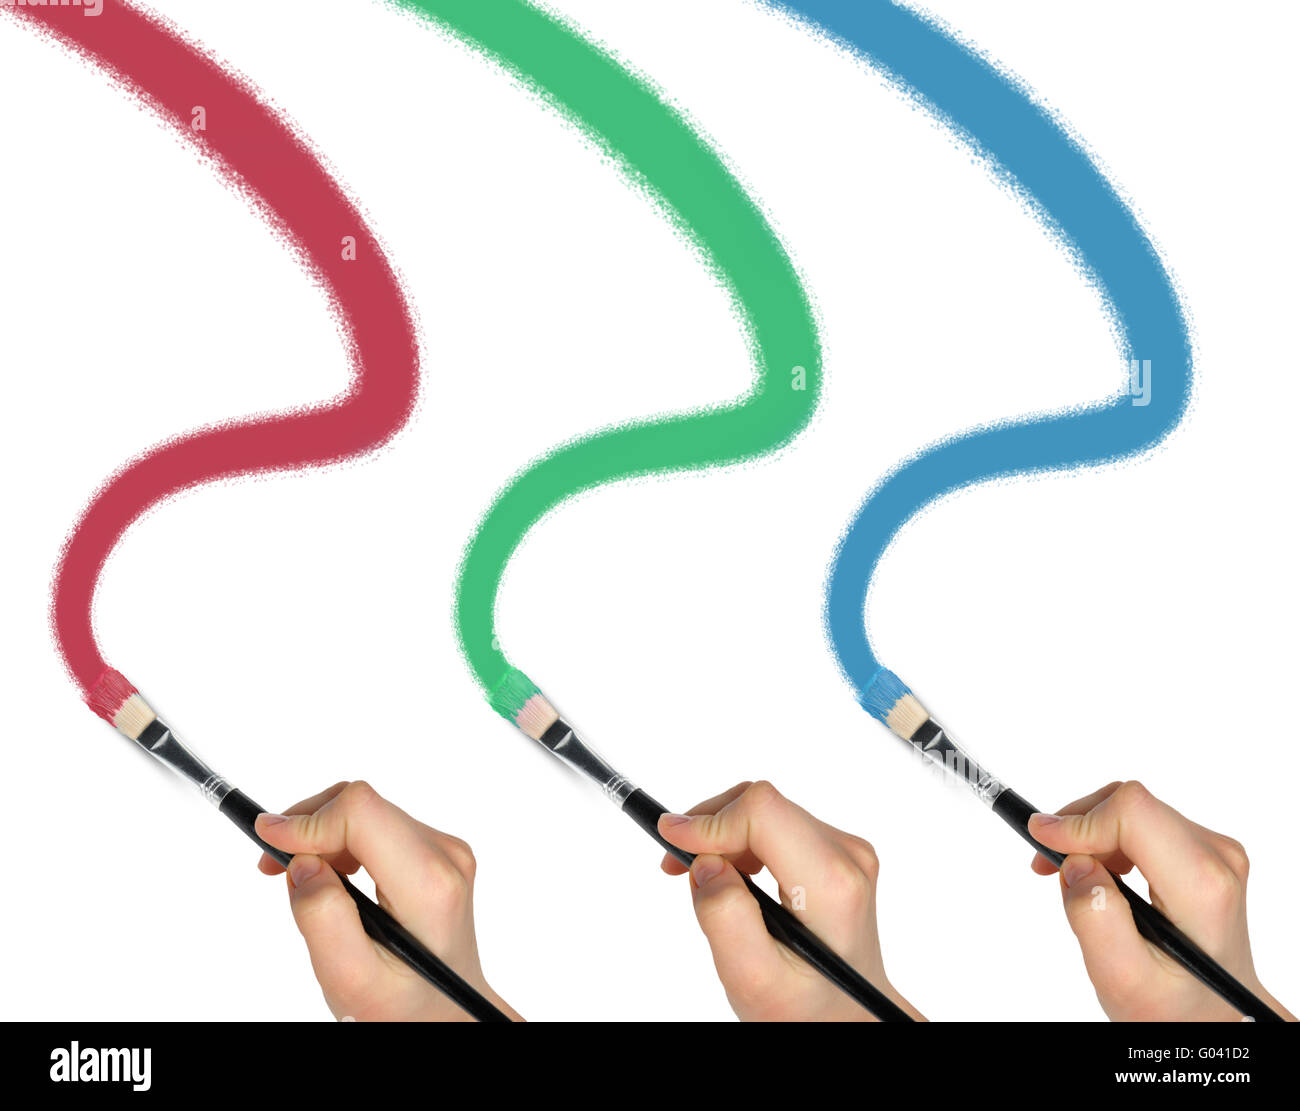 La main avec un pinceau pour dessiner une courbe rouge,bleu et vert peinture  Photo Stock - Alamy